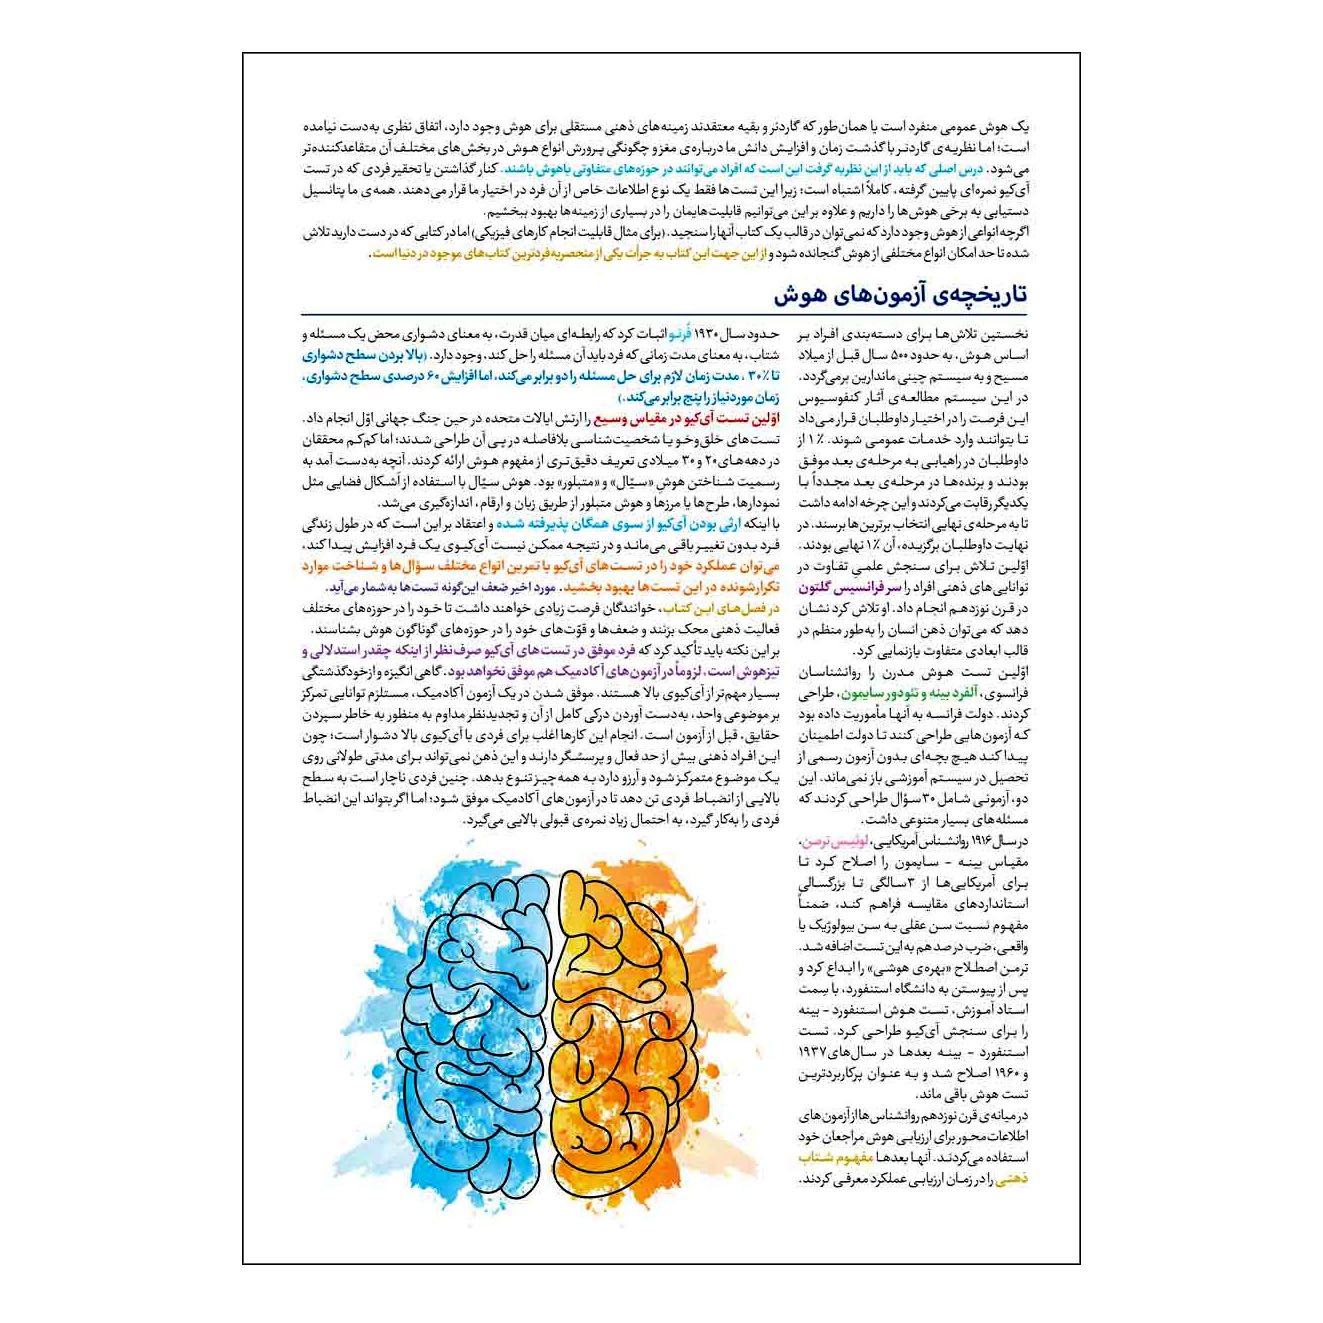 کتاب هوش کمپلکس هشتم و نهم ویرایش 1400 اثر مصطفی باقری انتشارات مهروماه